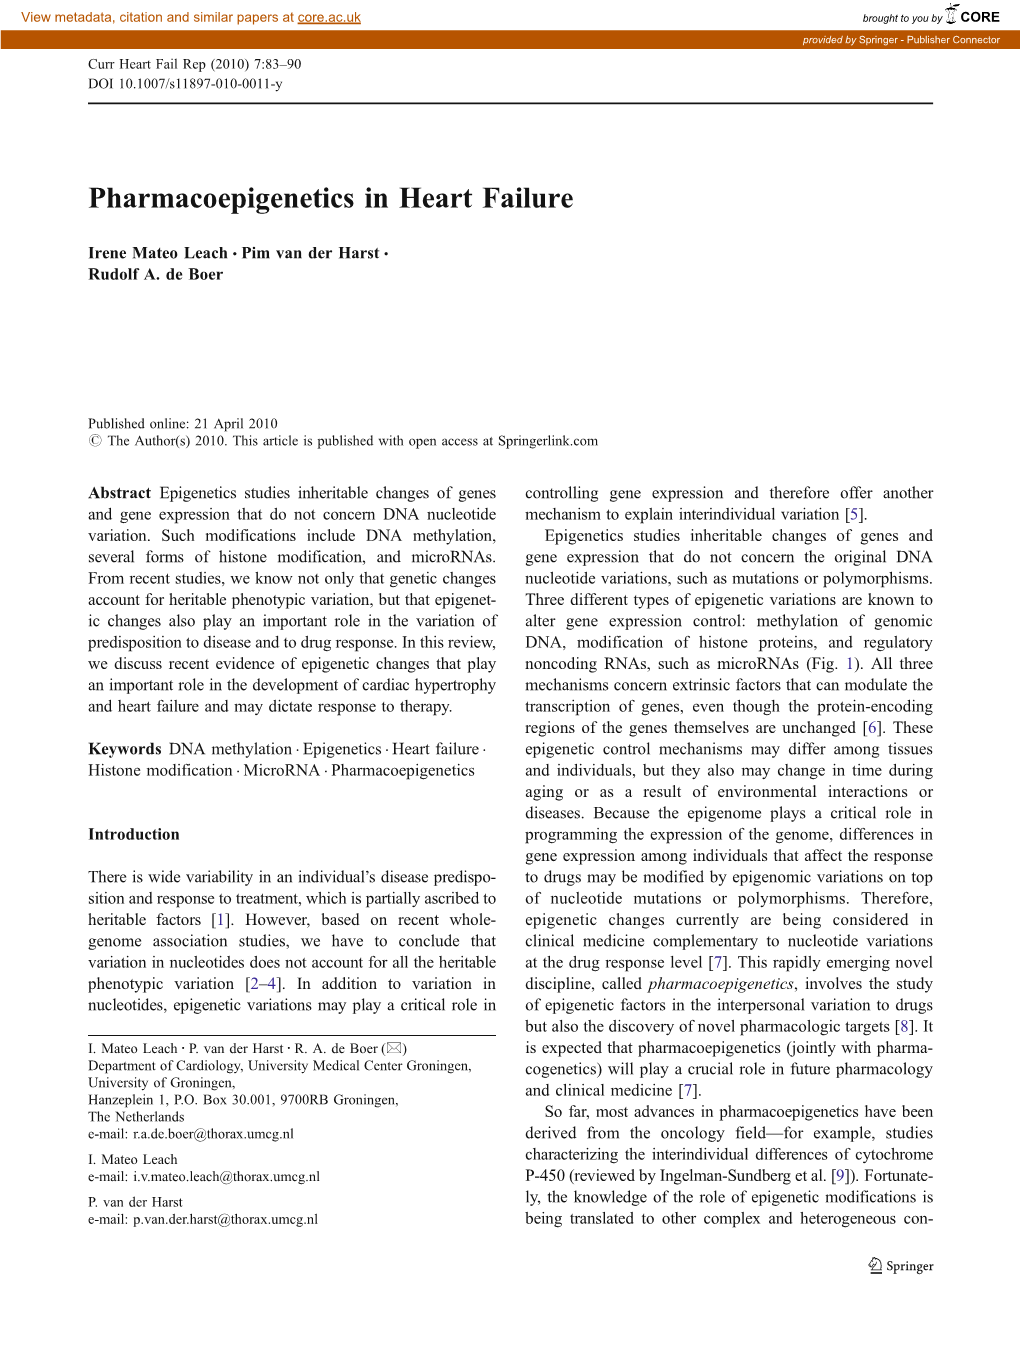 Pharmacoepigenetics in Heart Failure